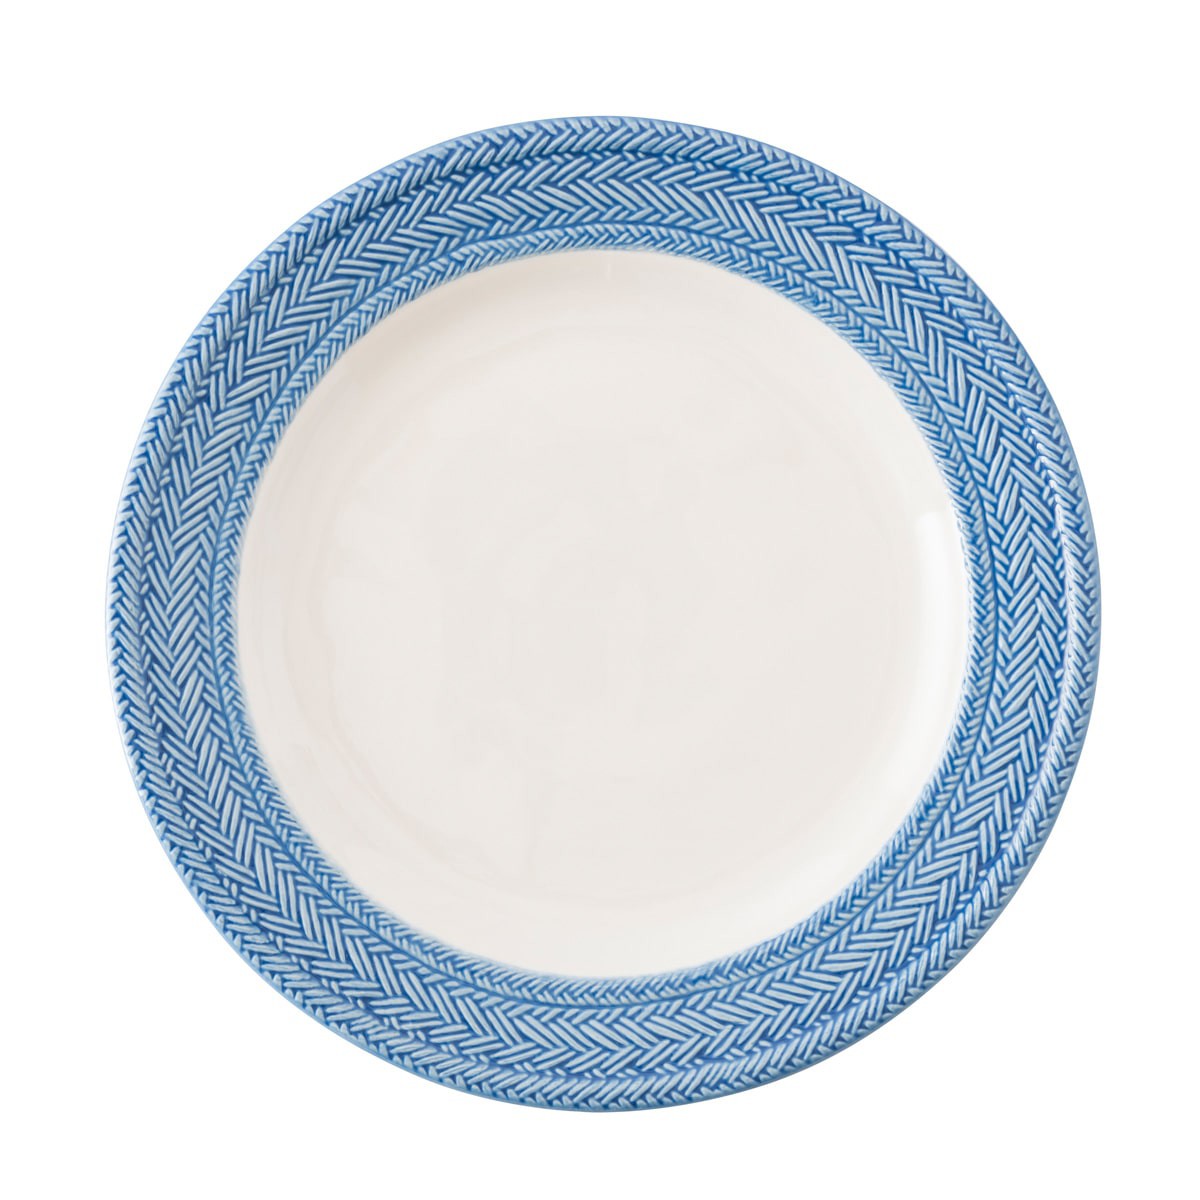 Le Panier White & Delft Blue Dinner Plate